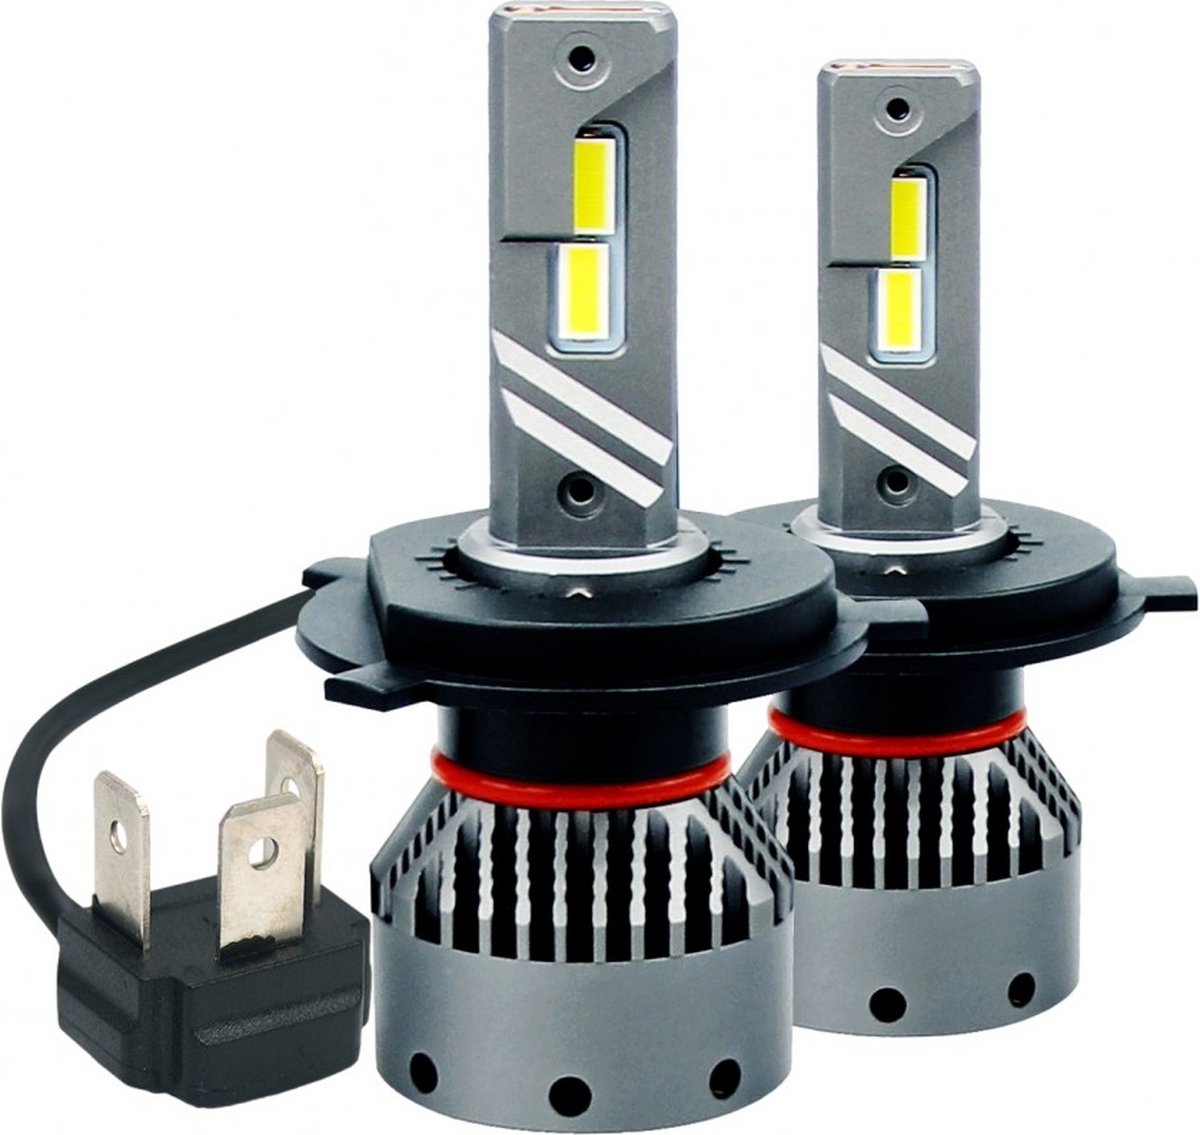 H4 koplamp set | 2x 4-SMD LED daglichtwit 6000K - 13000 Lm/stuk | CAN-BUS 12V - 24V DC